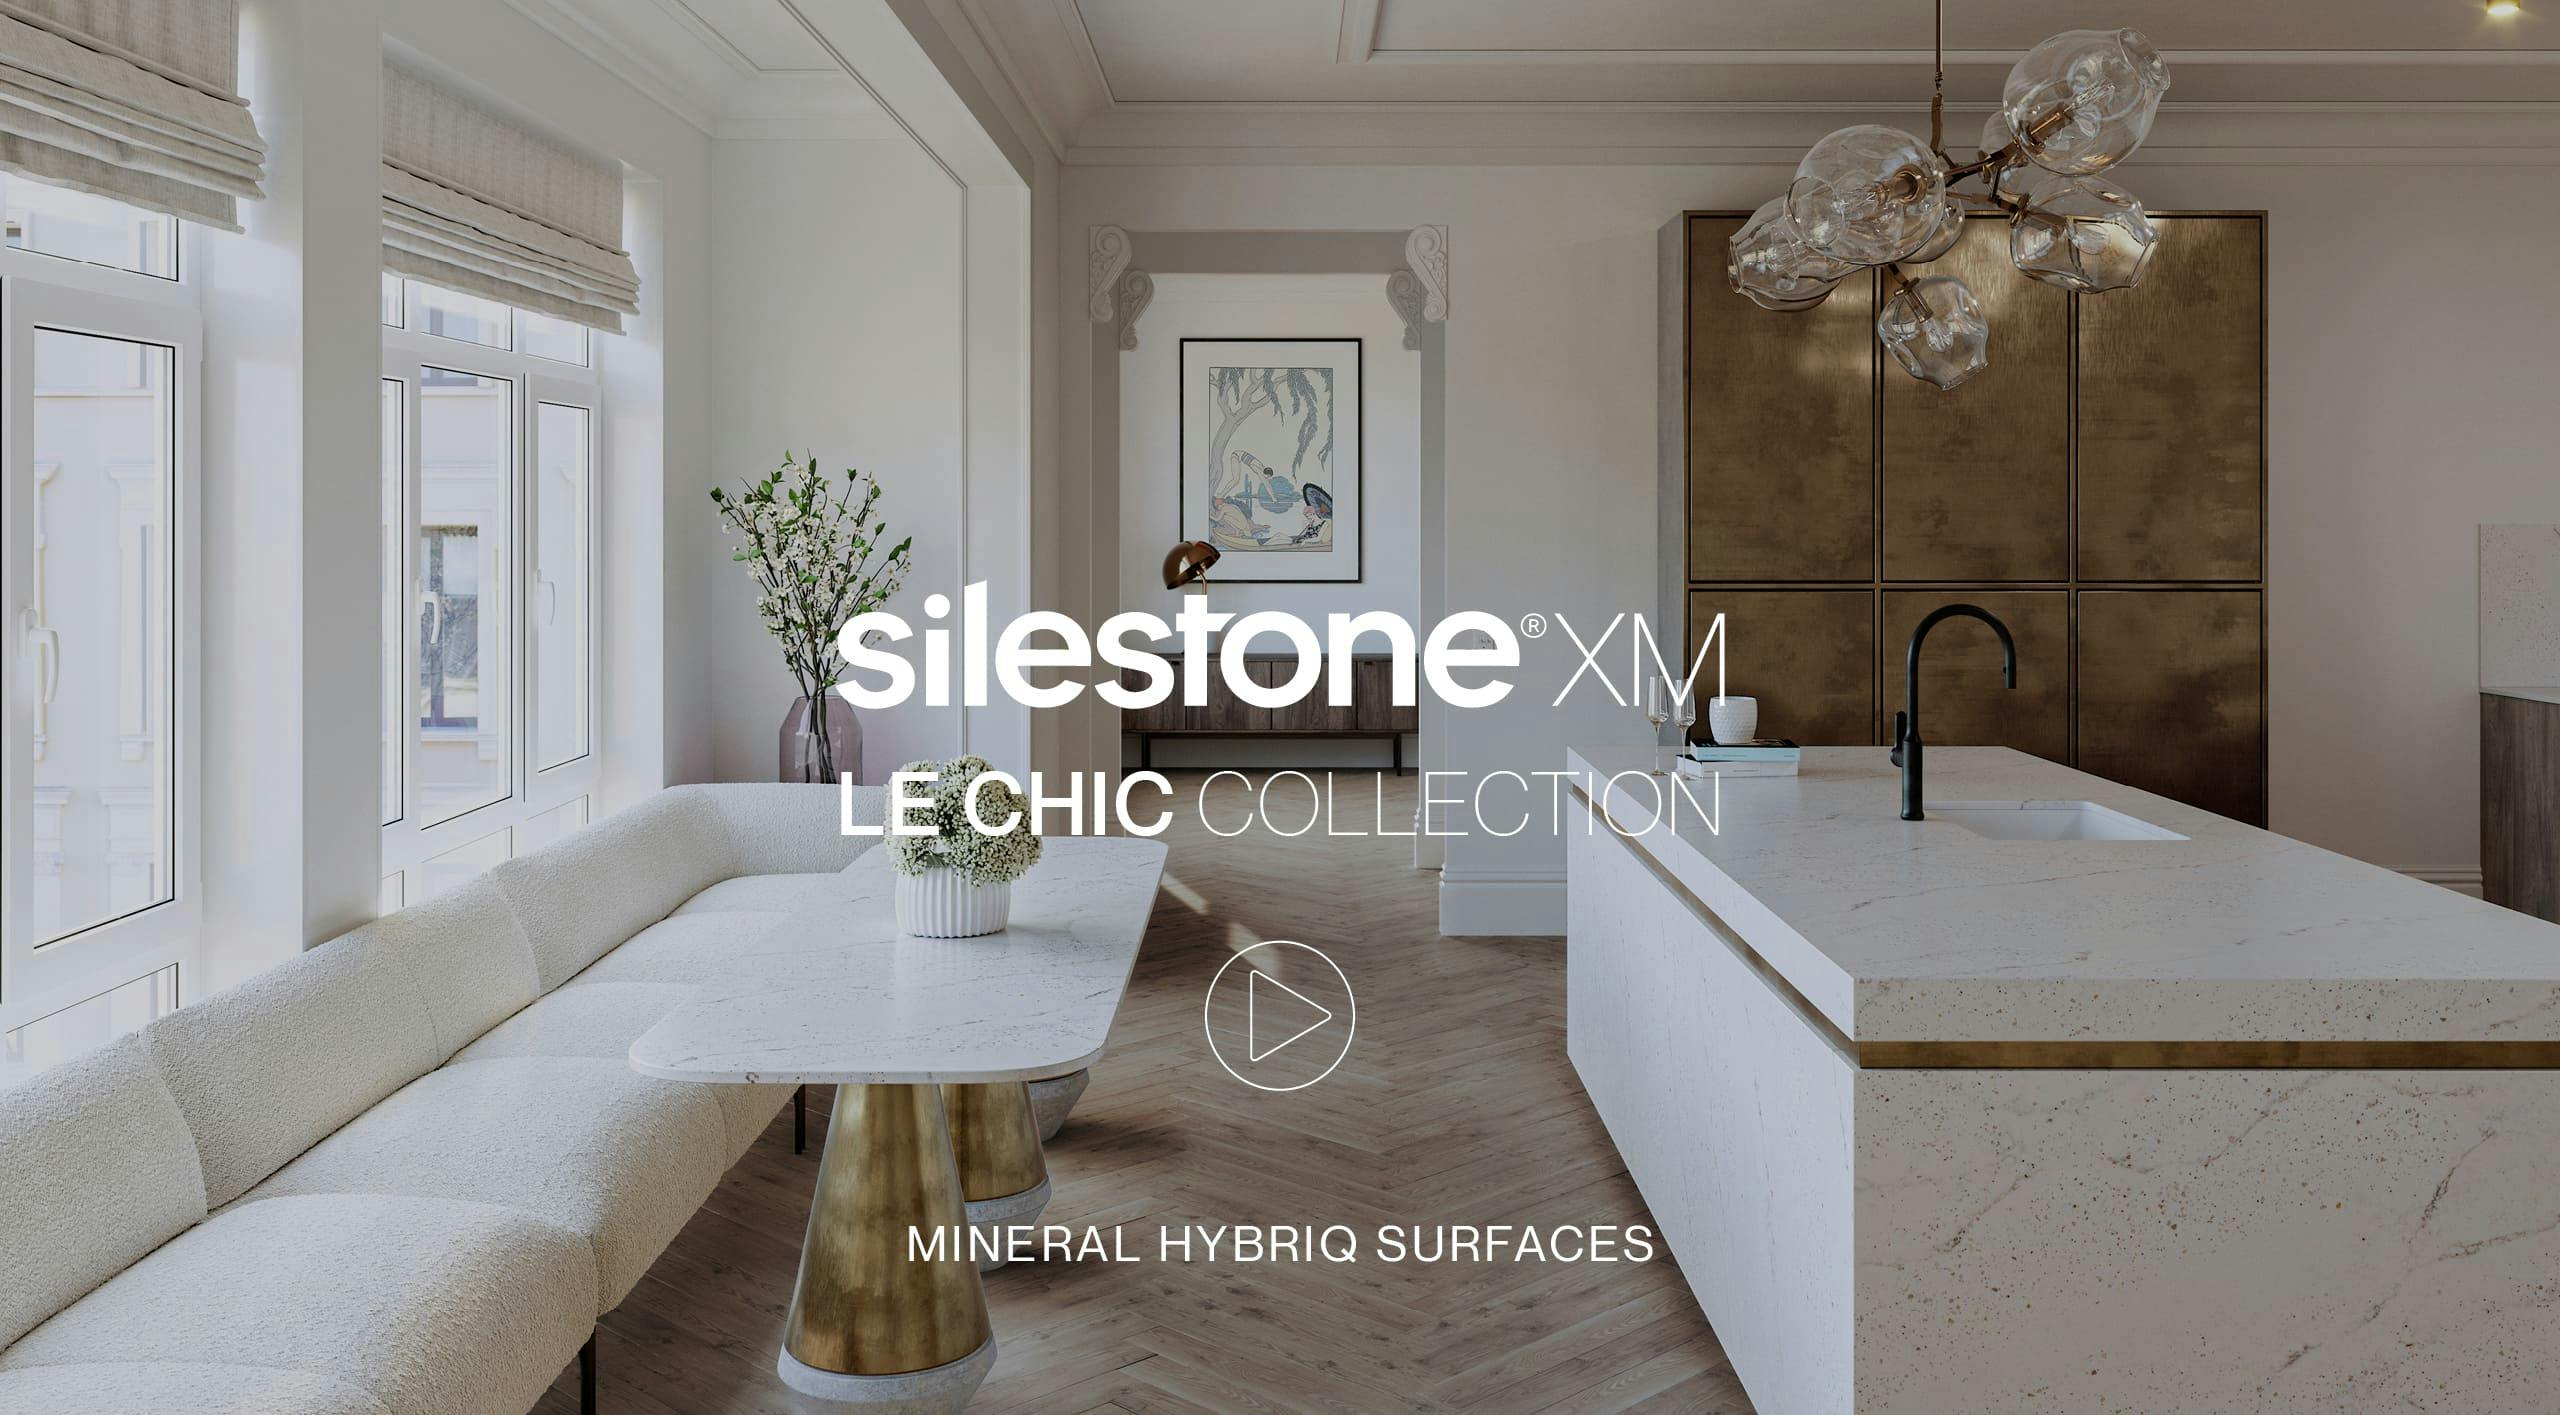 Numéro d'image 1 de la section actuelle de Cosentino présente Silestone®XM, une nouvelle génération de surfaces minérales de Cosentino France